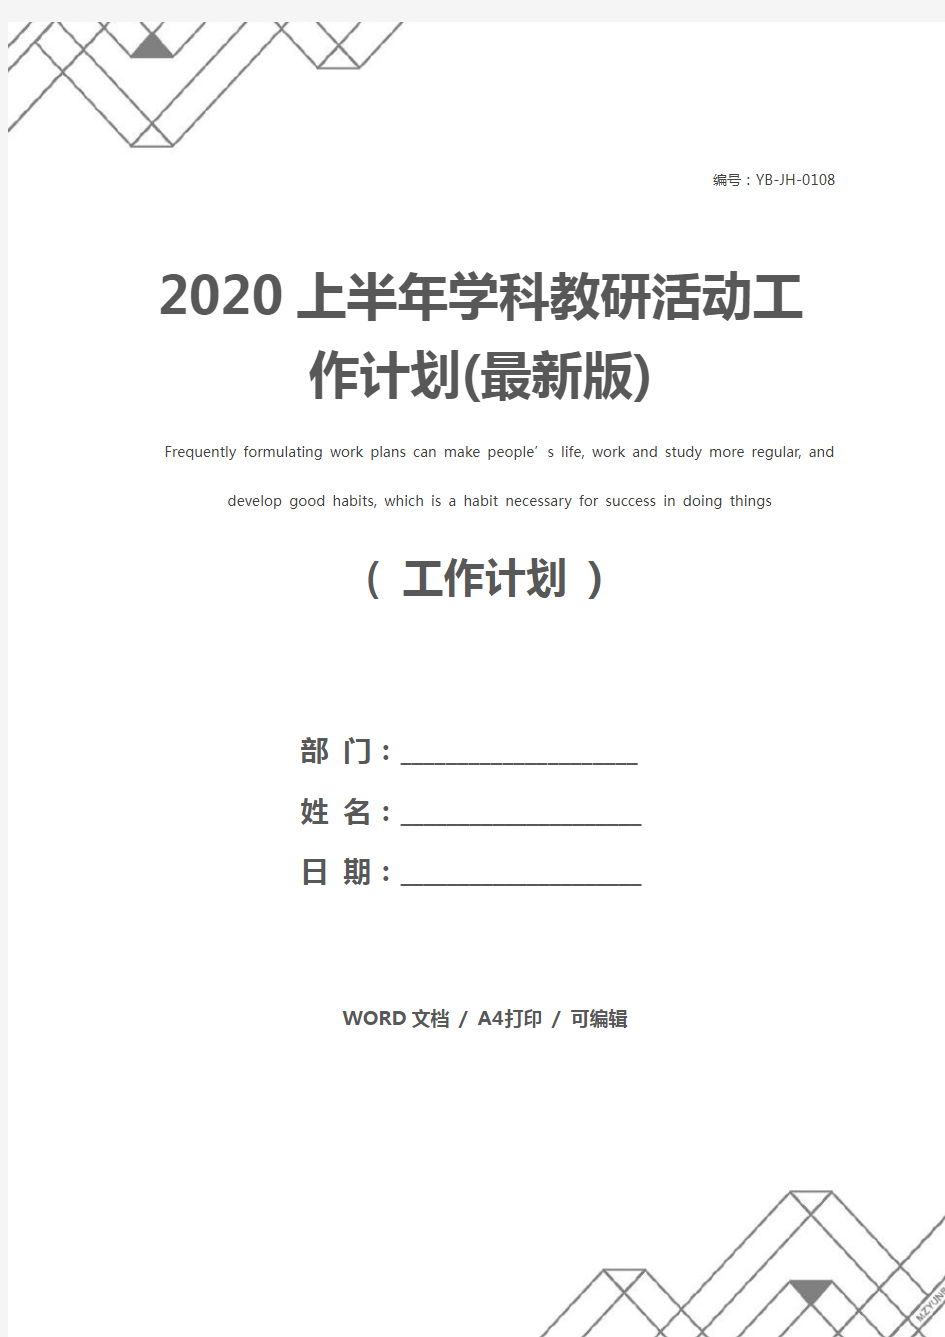 2020上半年学科教研活动工作计划(最新版)